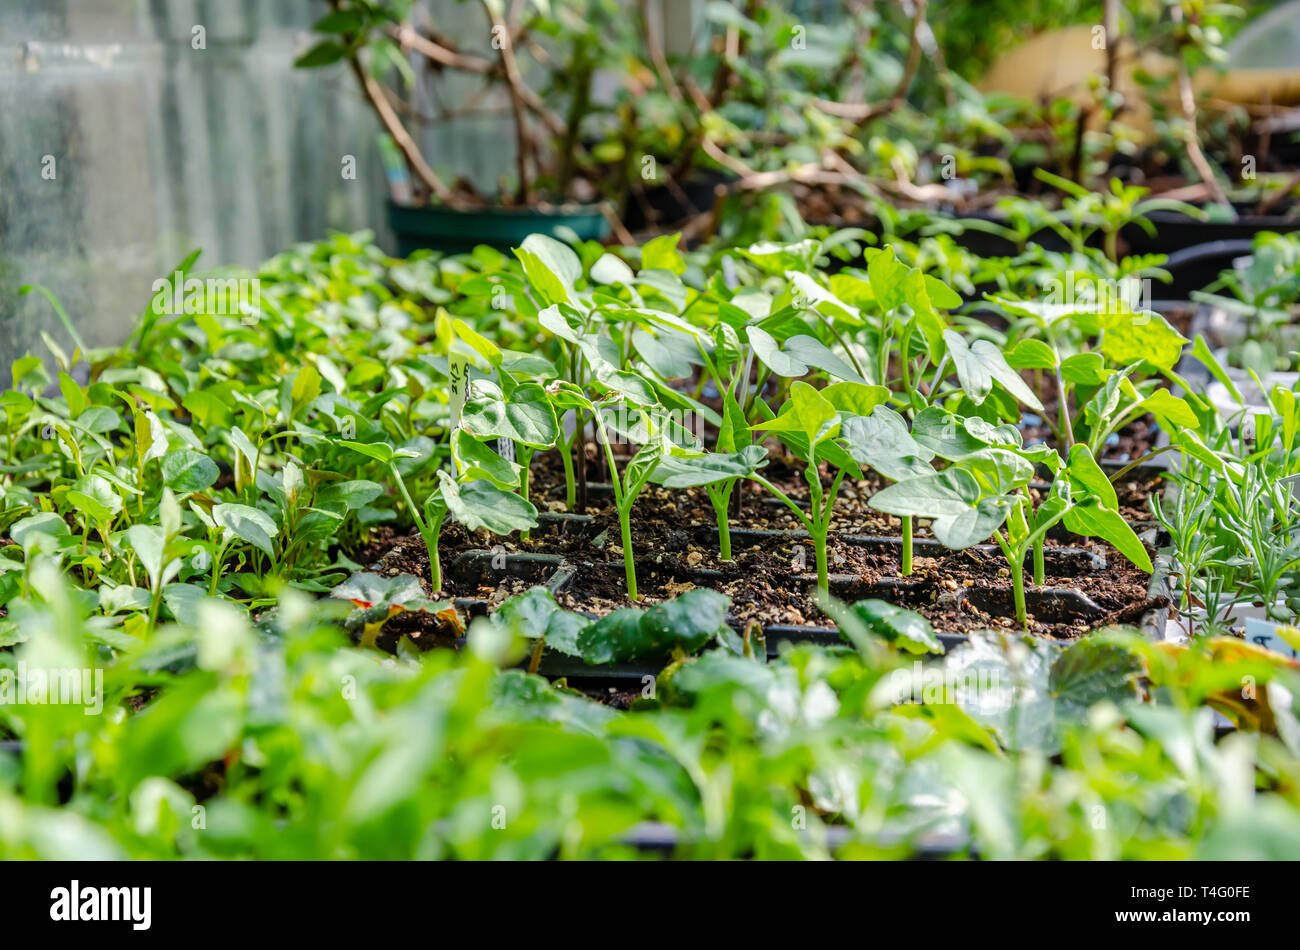 Le piantine che crescono in vedere vassoi in una serra. Questi sono stati coltivati a casa da un appassionato di giardinaggio. Foto Stock